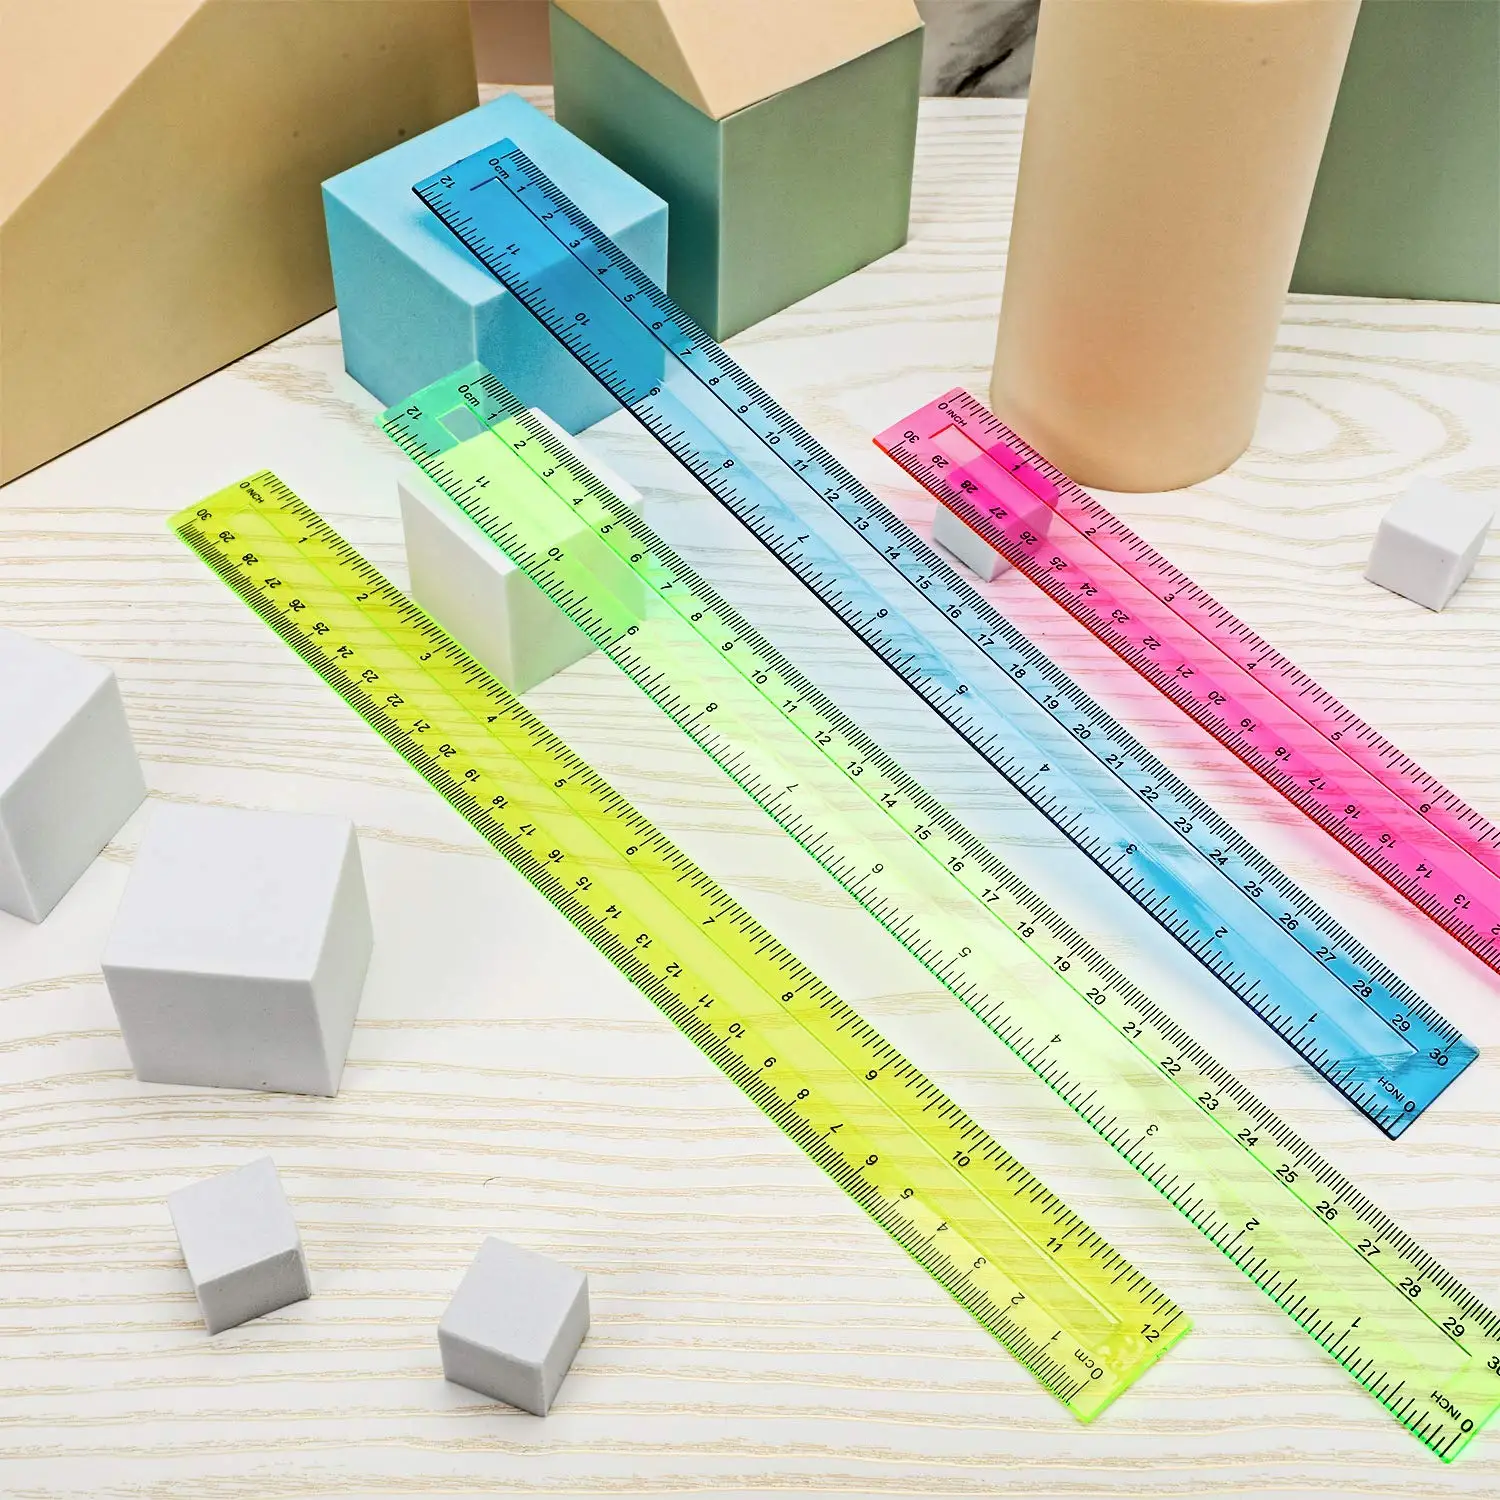 Regla de plástico transparente para estudiantes, herramienta de medición estándar/métrica de 30cm, suministros de papelería creativos para la escuela y la Oficina, 4 unidades